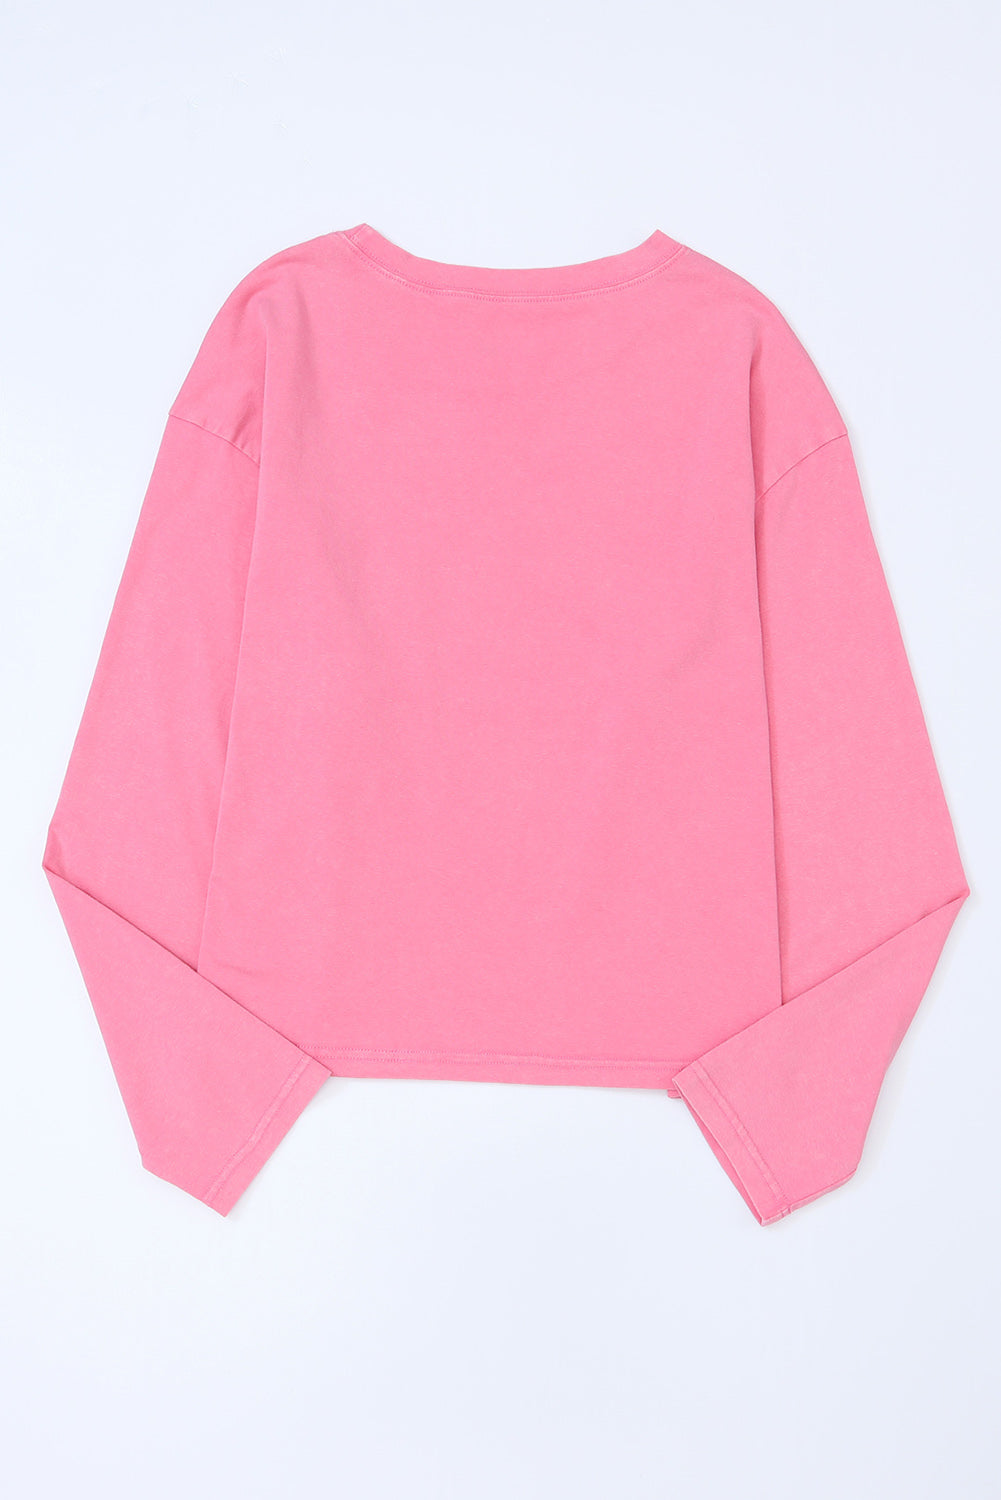 Rosafarbenes, langärmliges T-Shirt mit aufgesetzter Tasche und Spitze